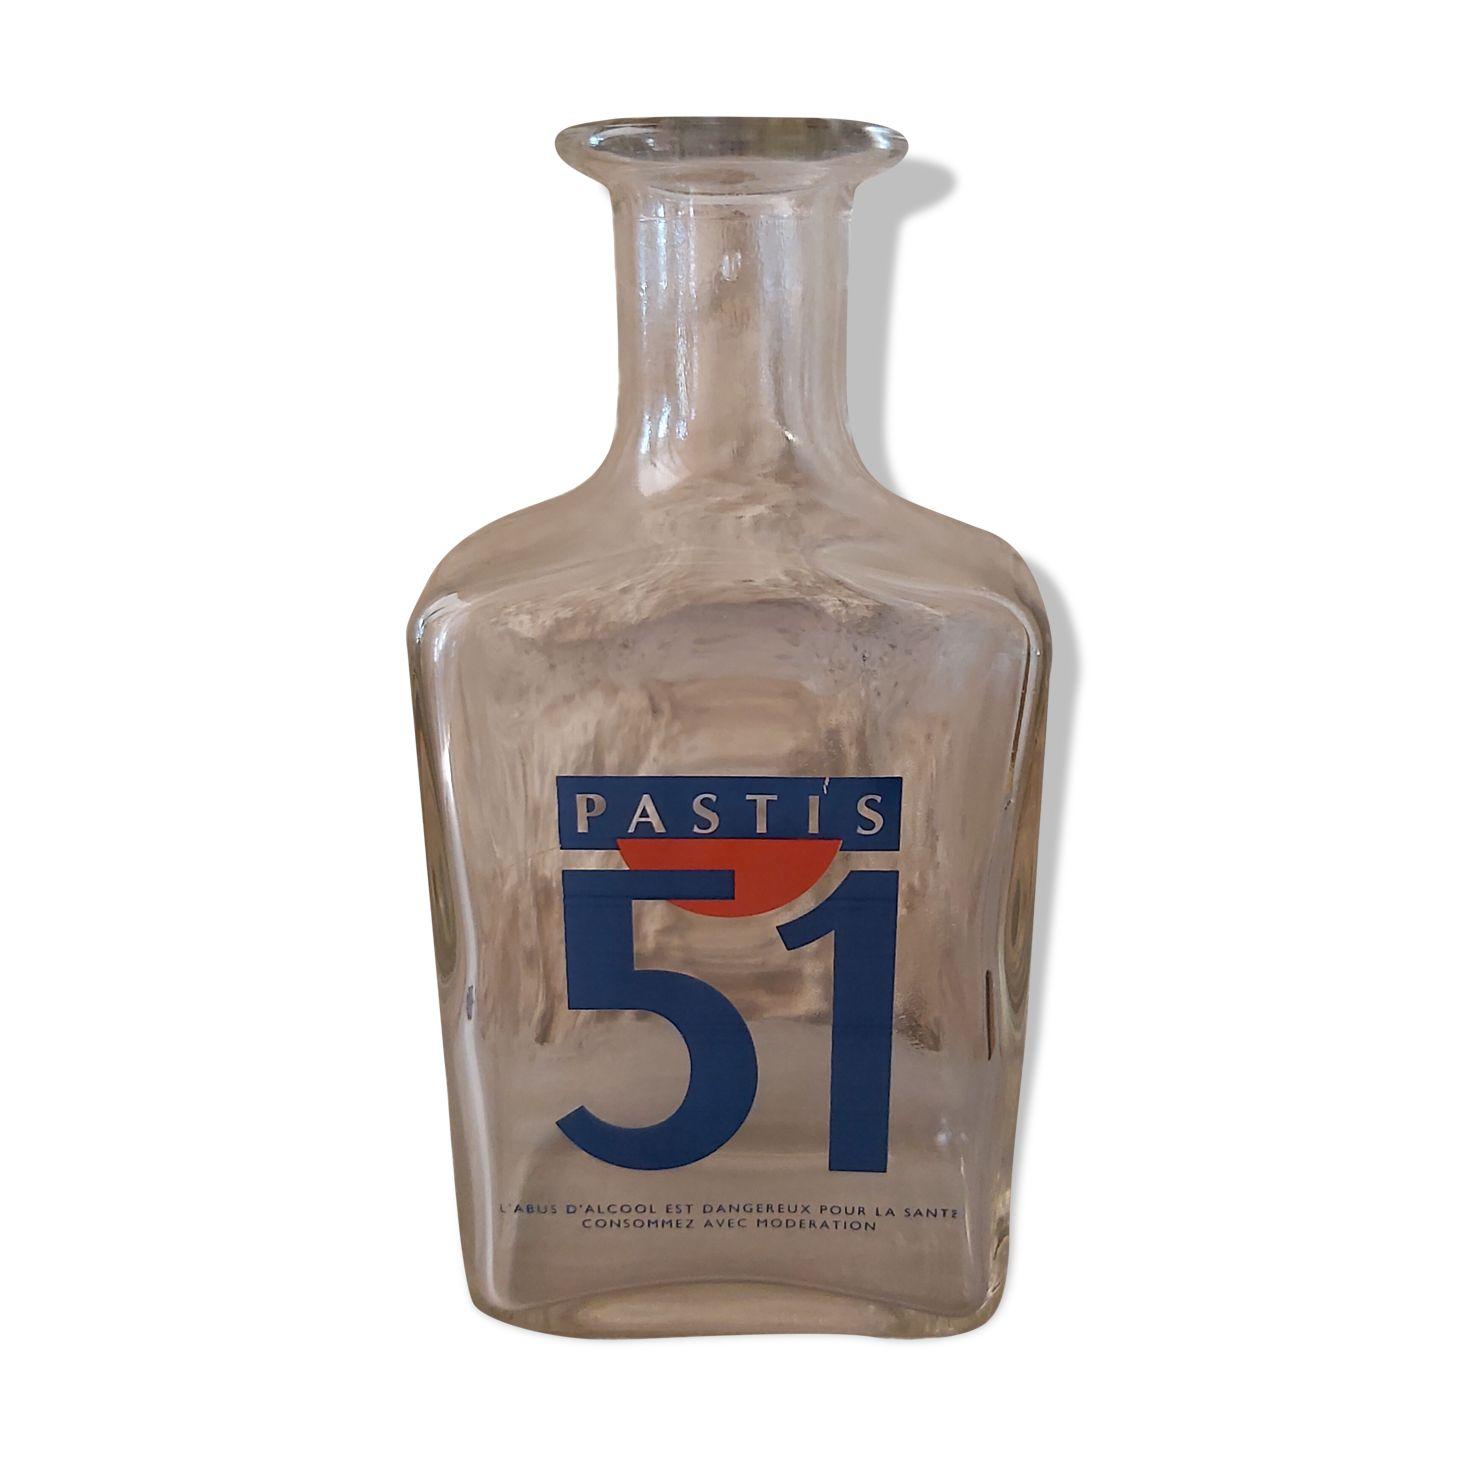 Achetez une bouteille de Pastis 51 et une carafe offerte !